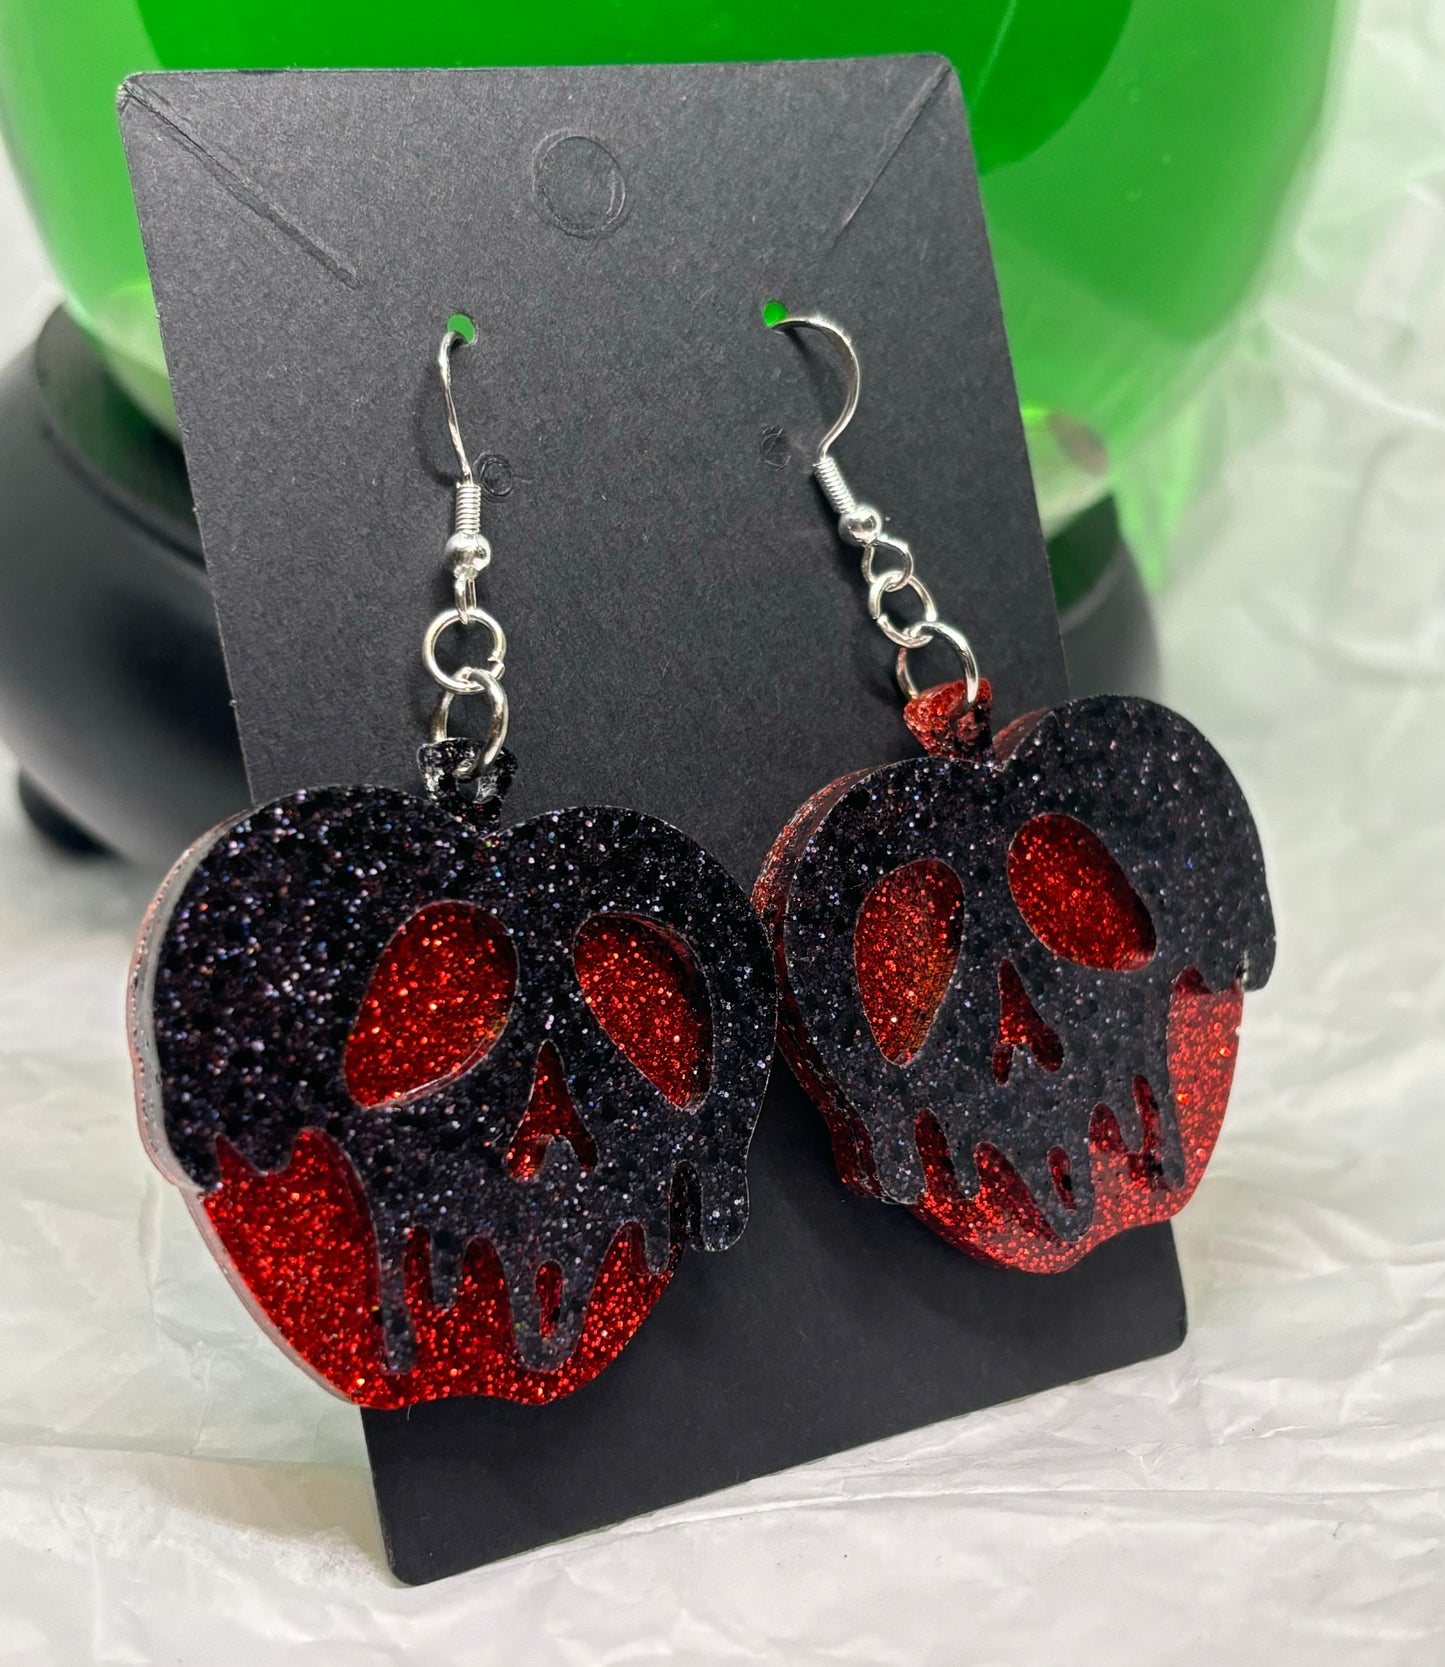 Poison Apple Earrings (Black & Red)